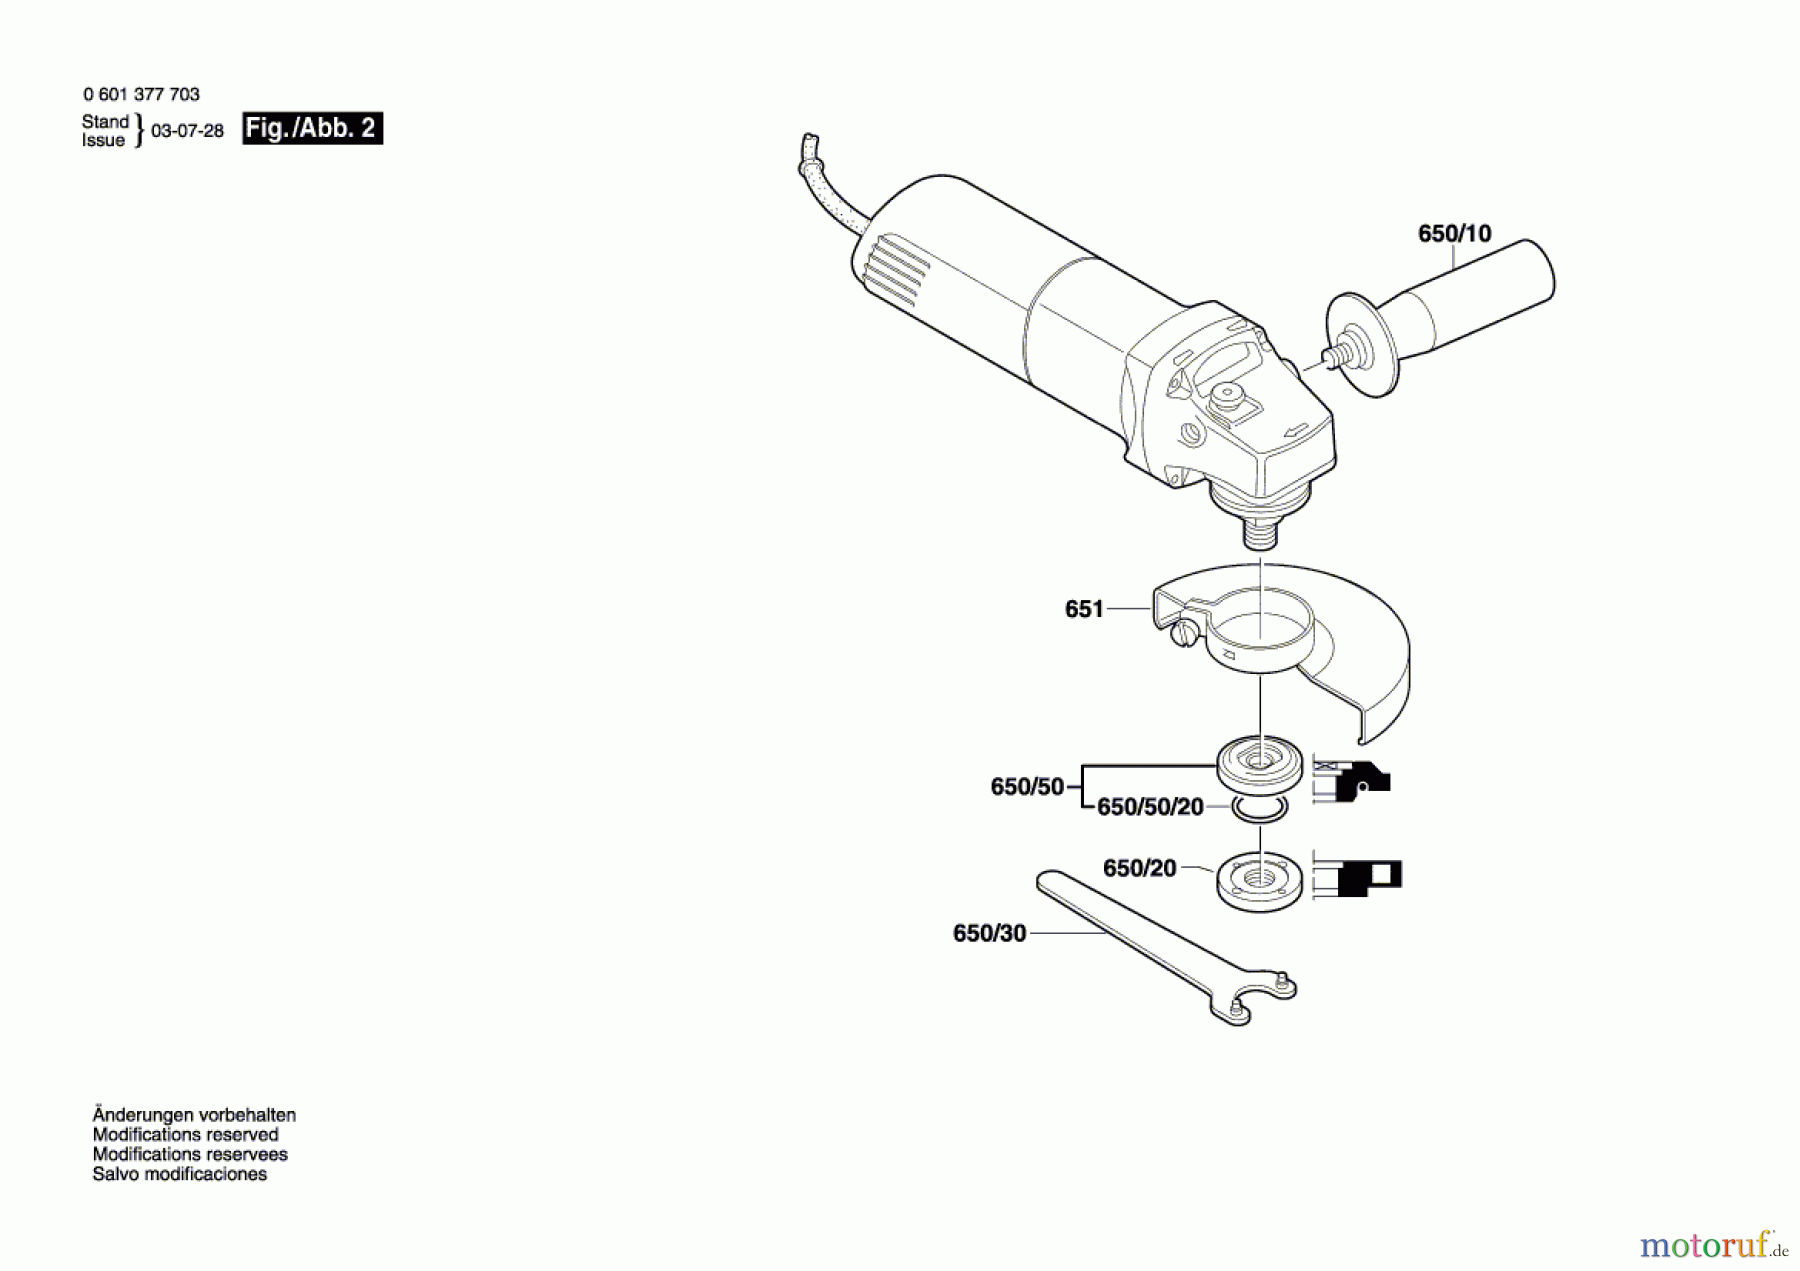  Bosch Werkzeug Winkelschleifer GWS 8-125 CE Seite 2